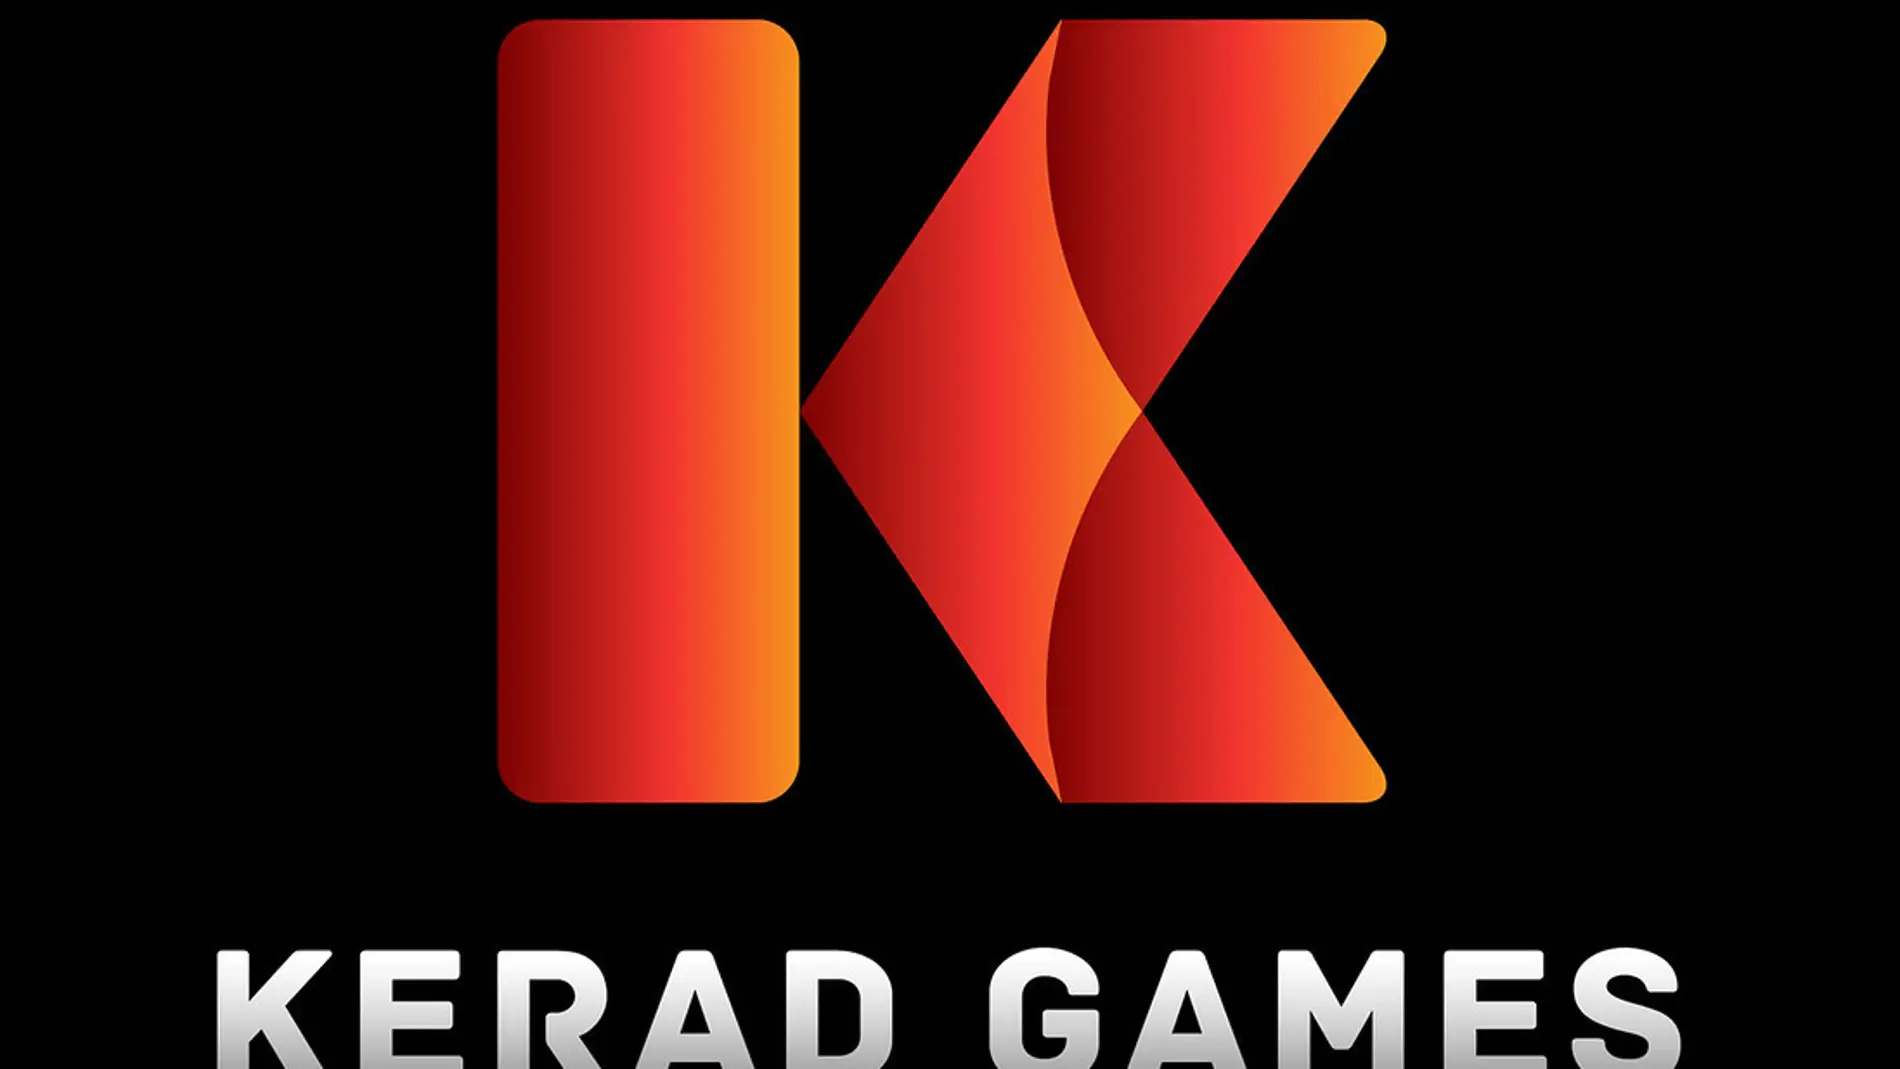 Kerad Games